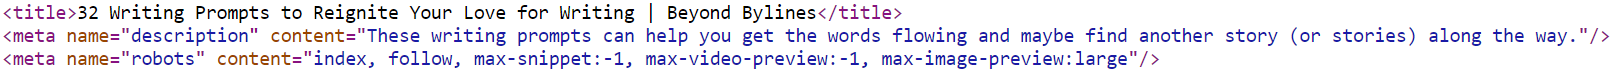 Screenshot of meta tags in HTML code